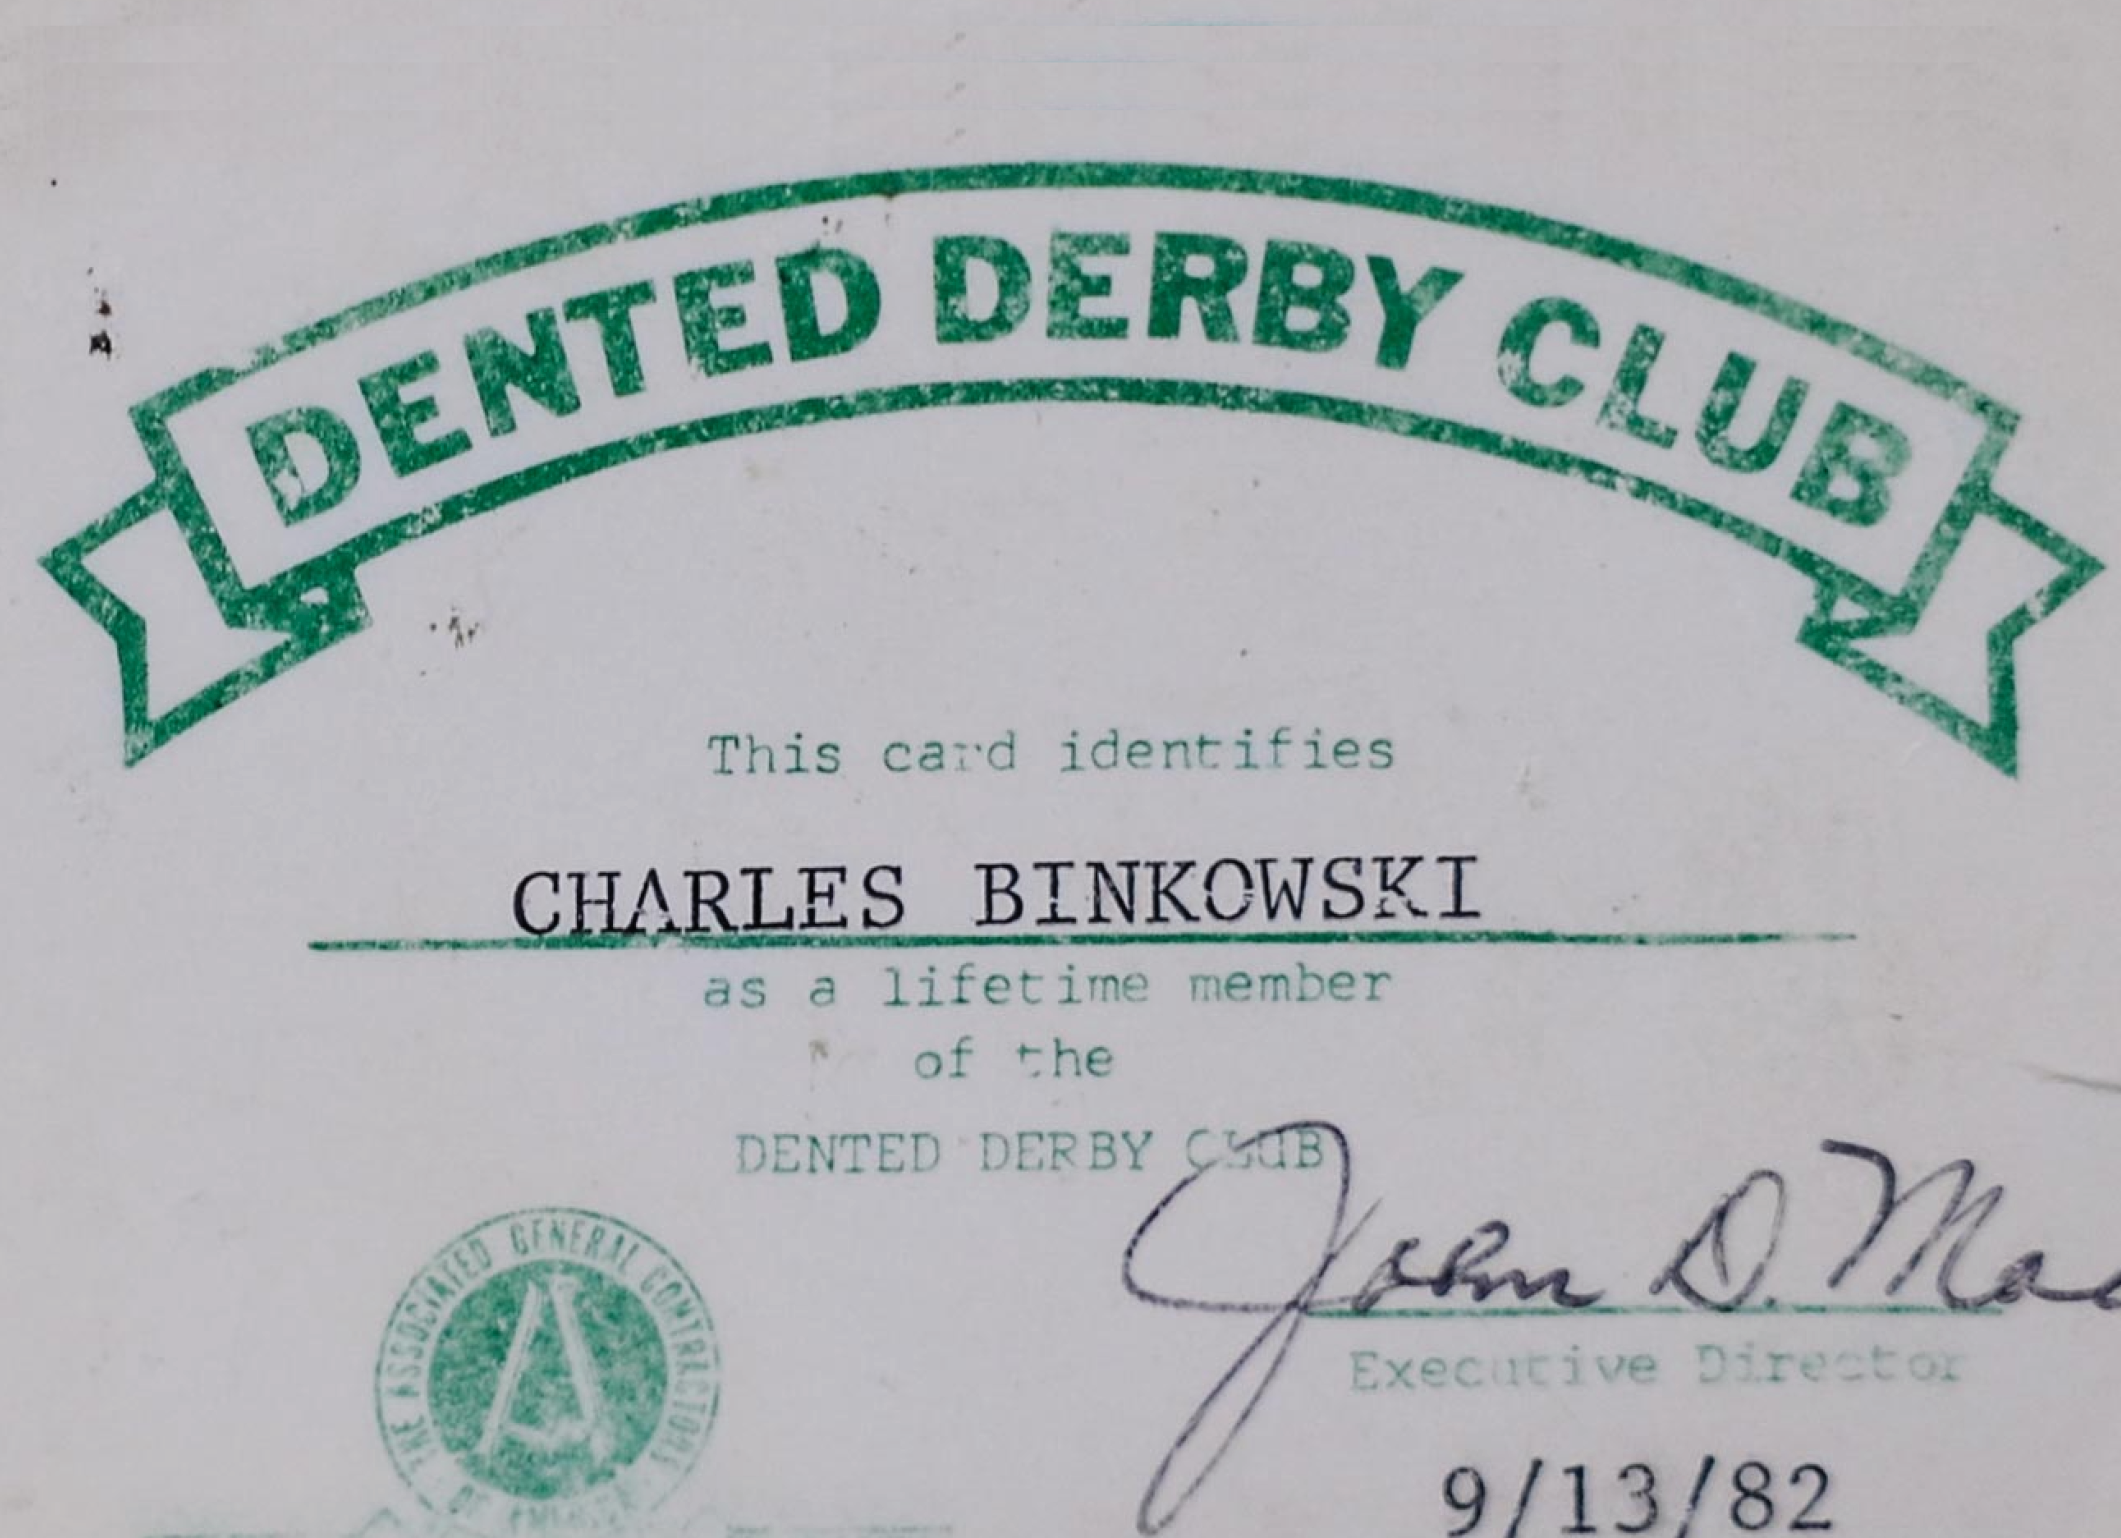 The Dented Derby Club